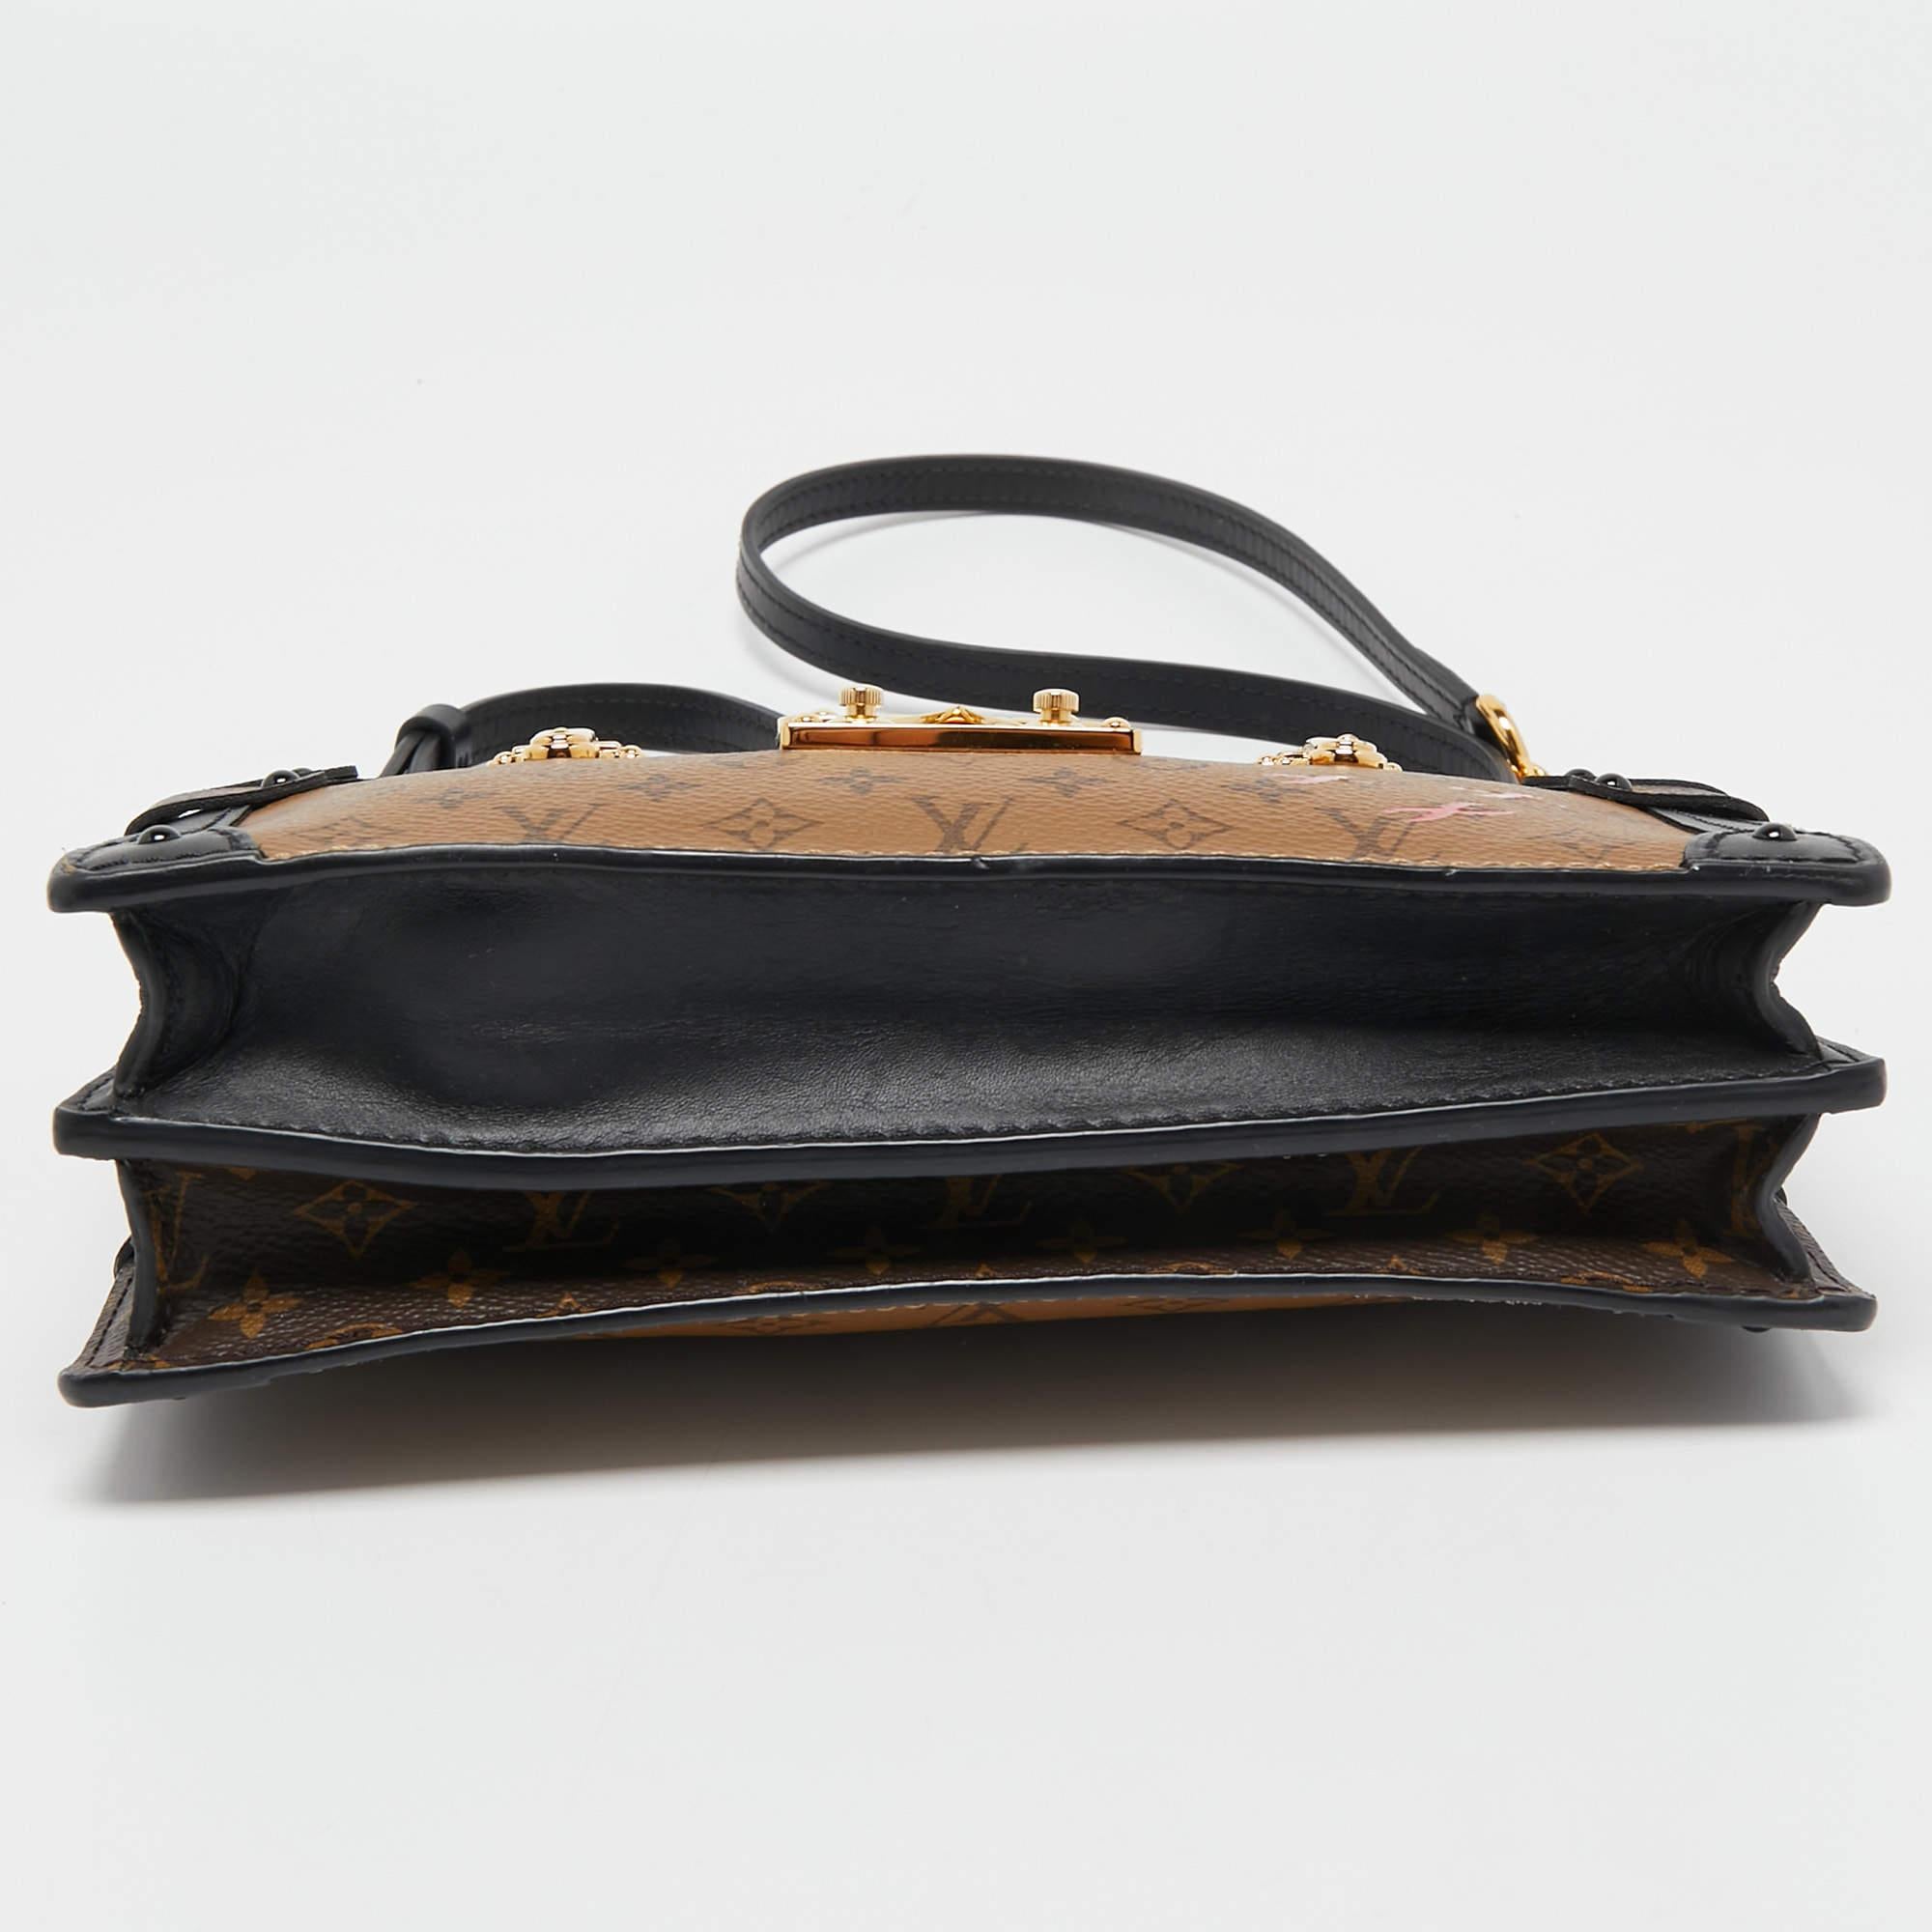 Louis Vuitton Reverse Monogram Canvas Trunk Clutch Bag 1